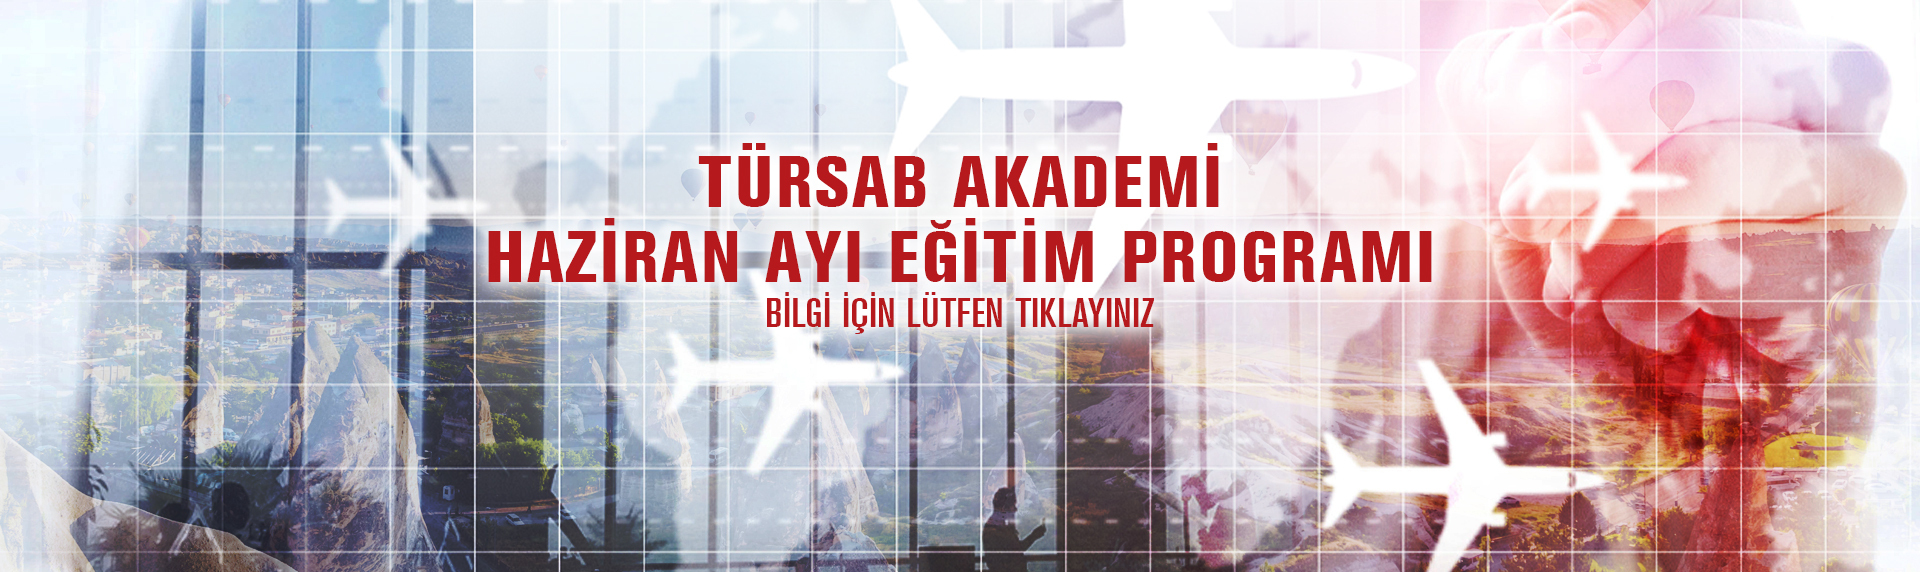 https://www.tursab.org.tr/duyurular/tursab-akademi-haziran-ayi-egitim-programi